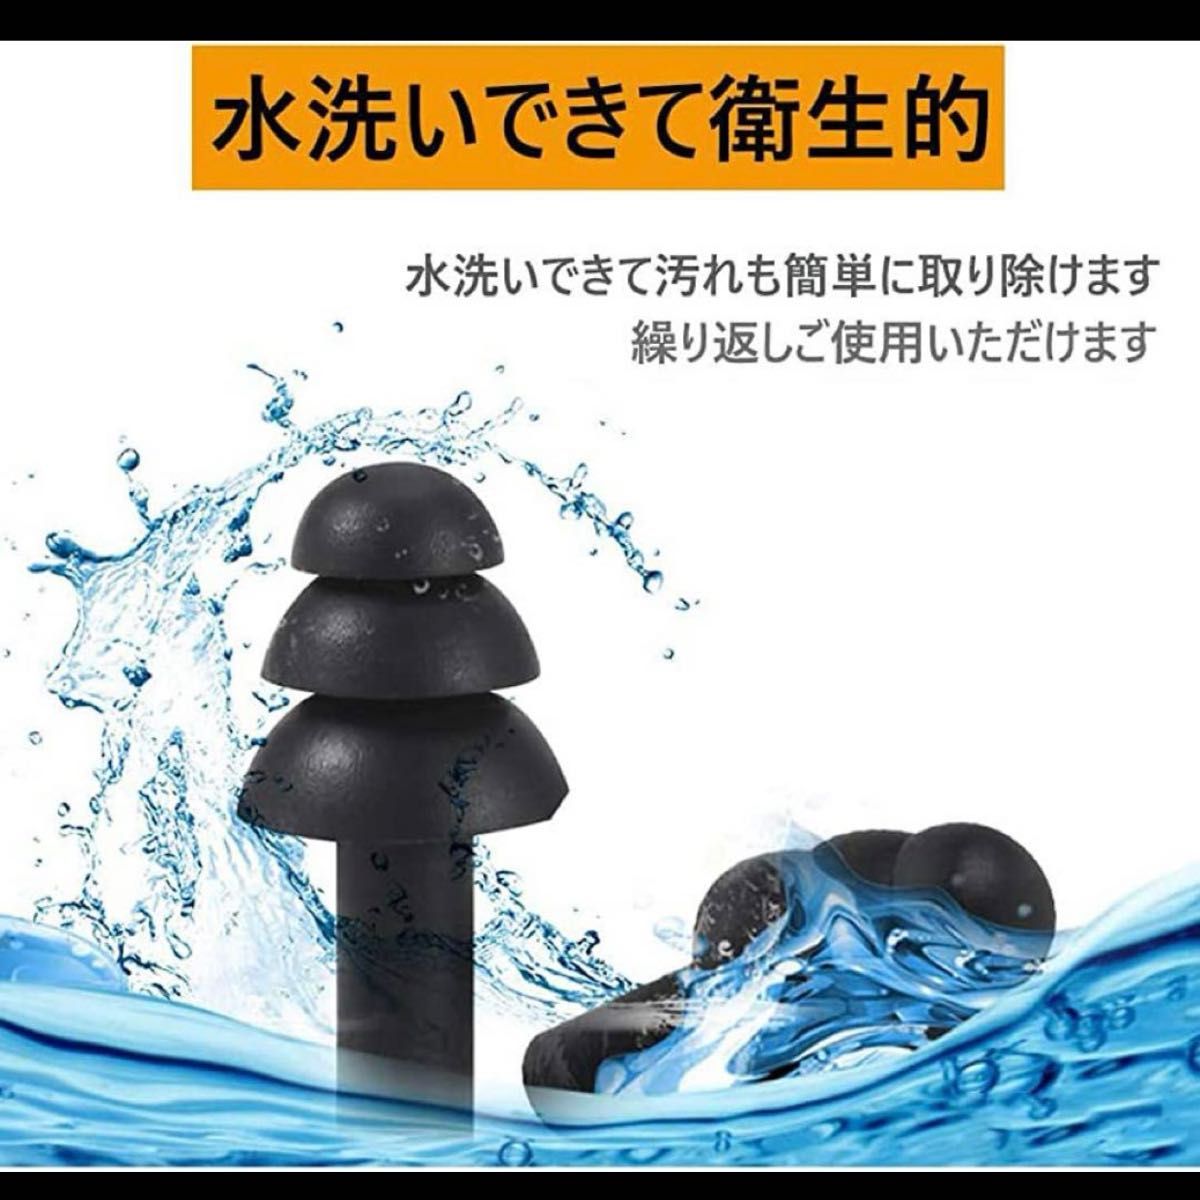 スイミング用 水泳 耳栓 水泳用耳栓 防水 再利用可能なシリコン